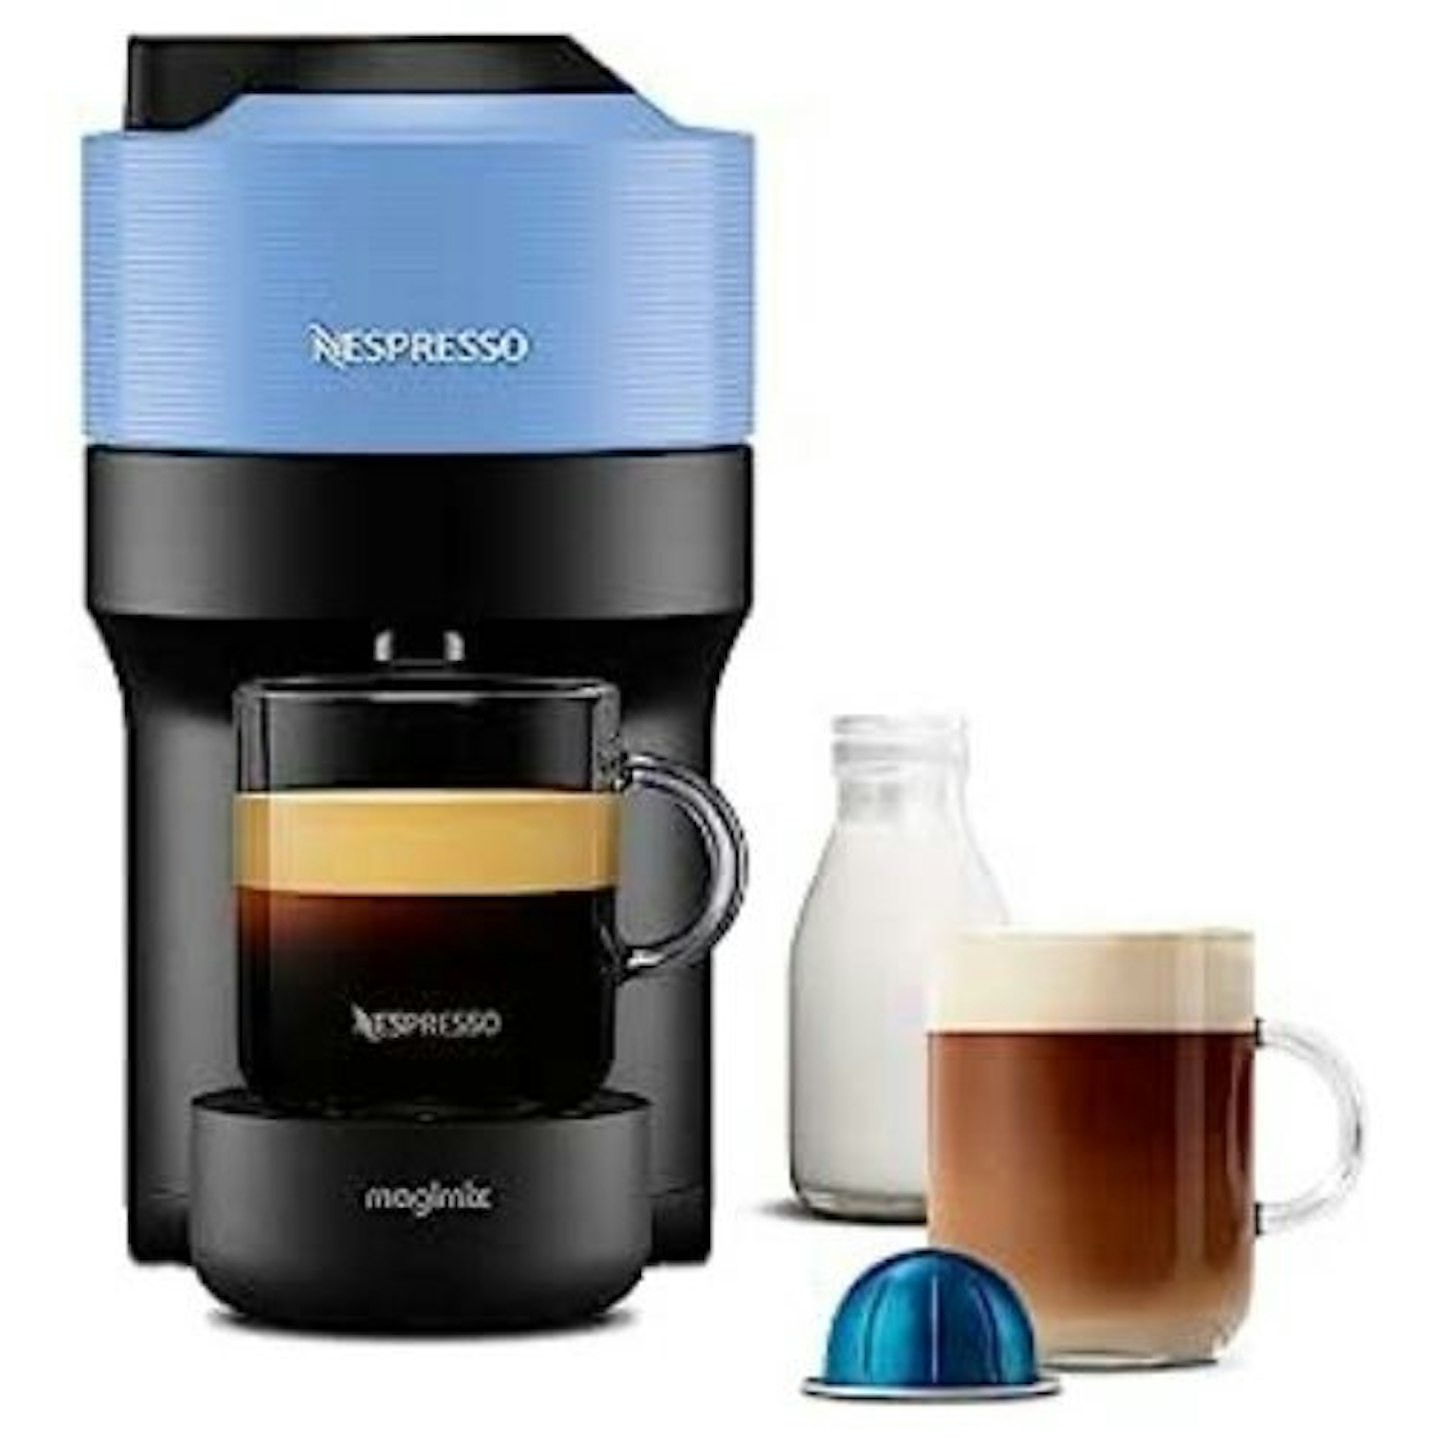 https://images.bauerhosting.com/affiliates/sites/9/2023/08/Nespresso-Vertuo-Pop.jpg?auto=format&w=1440&q=80